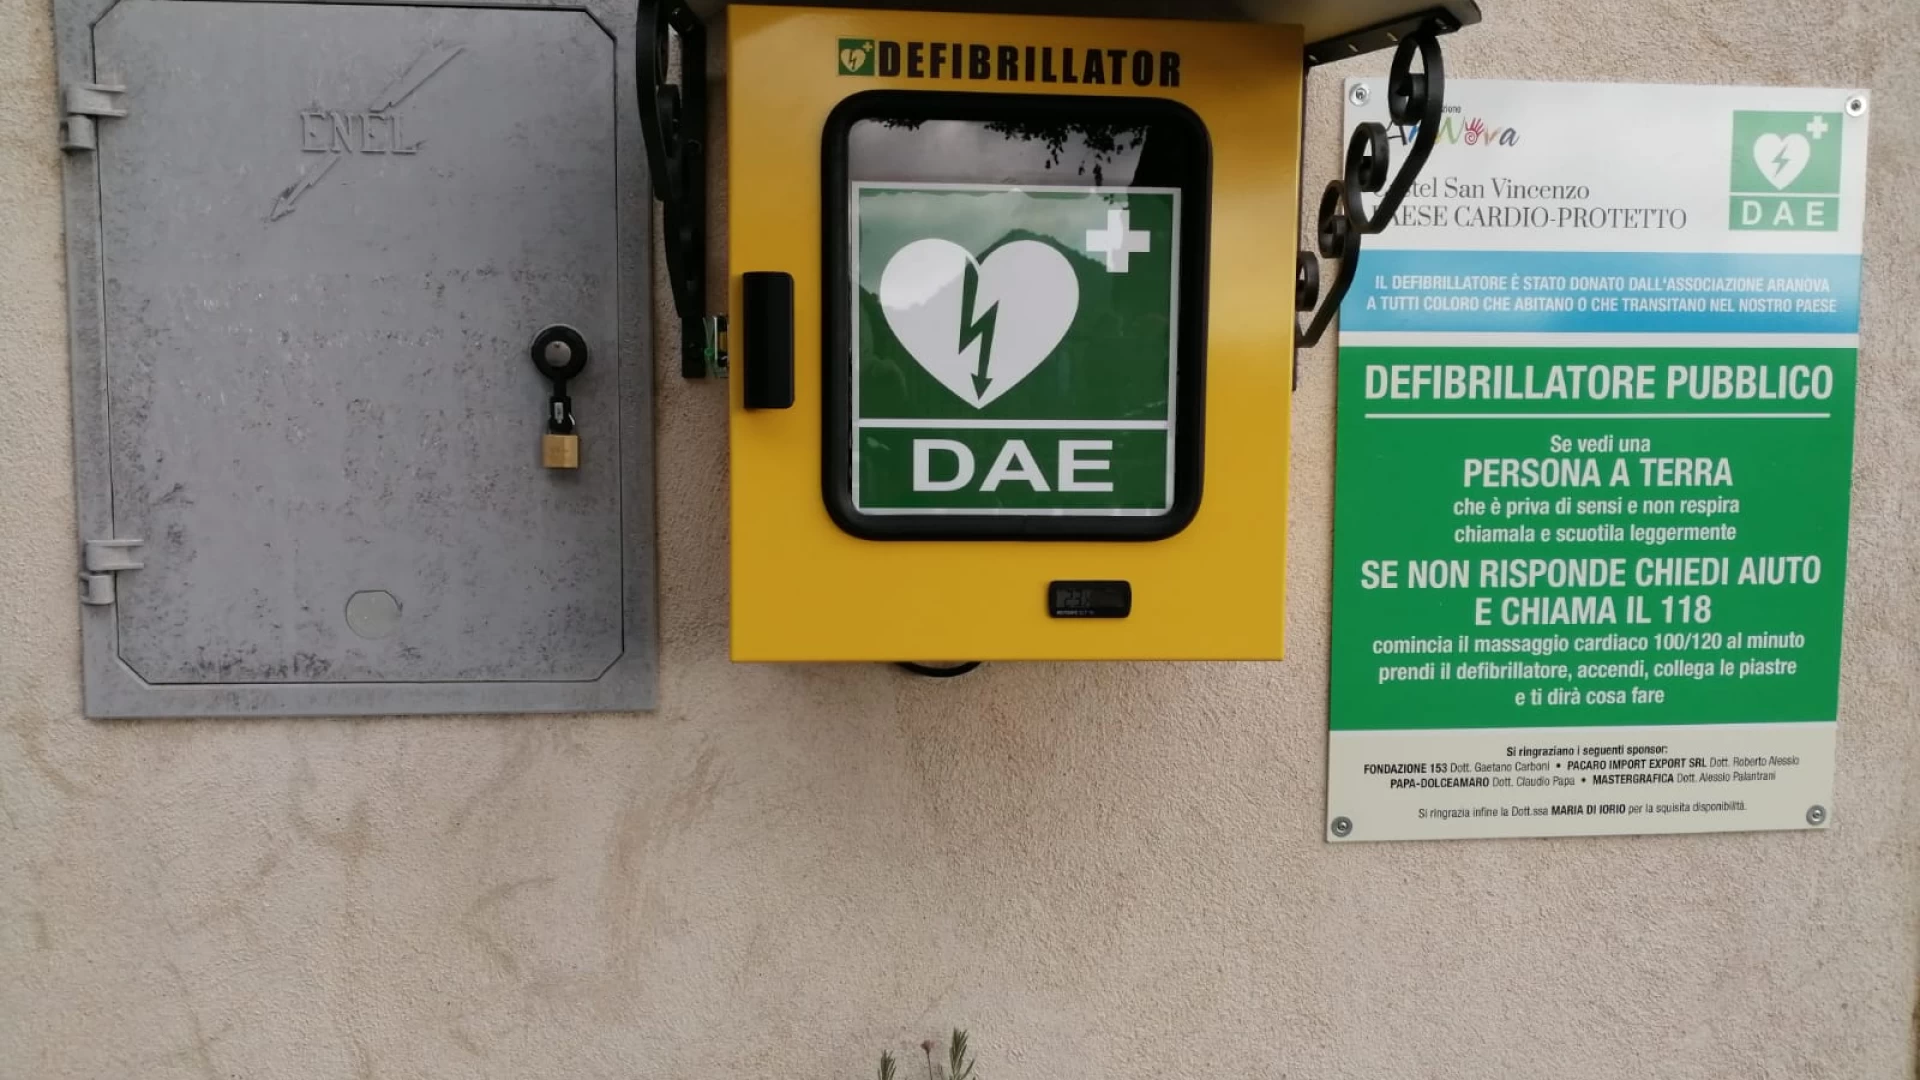 Dona anche tu per il rinnovo del defibrillatore a Castel San Vincenzo